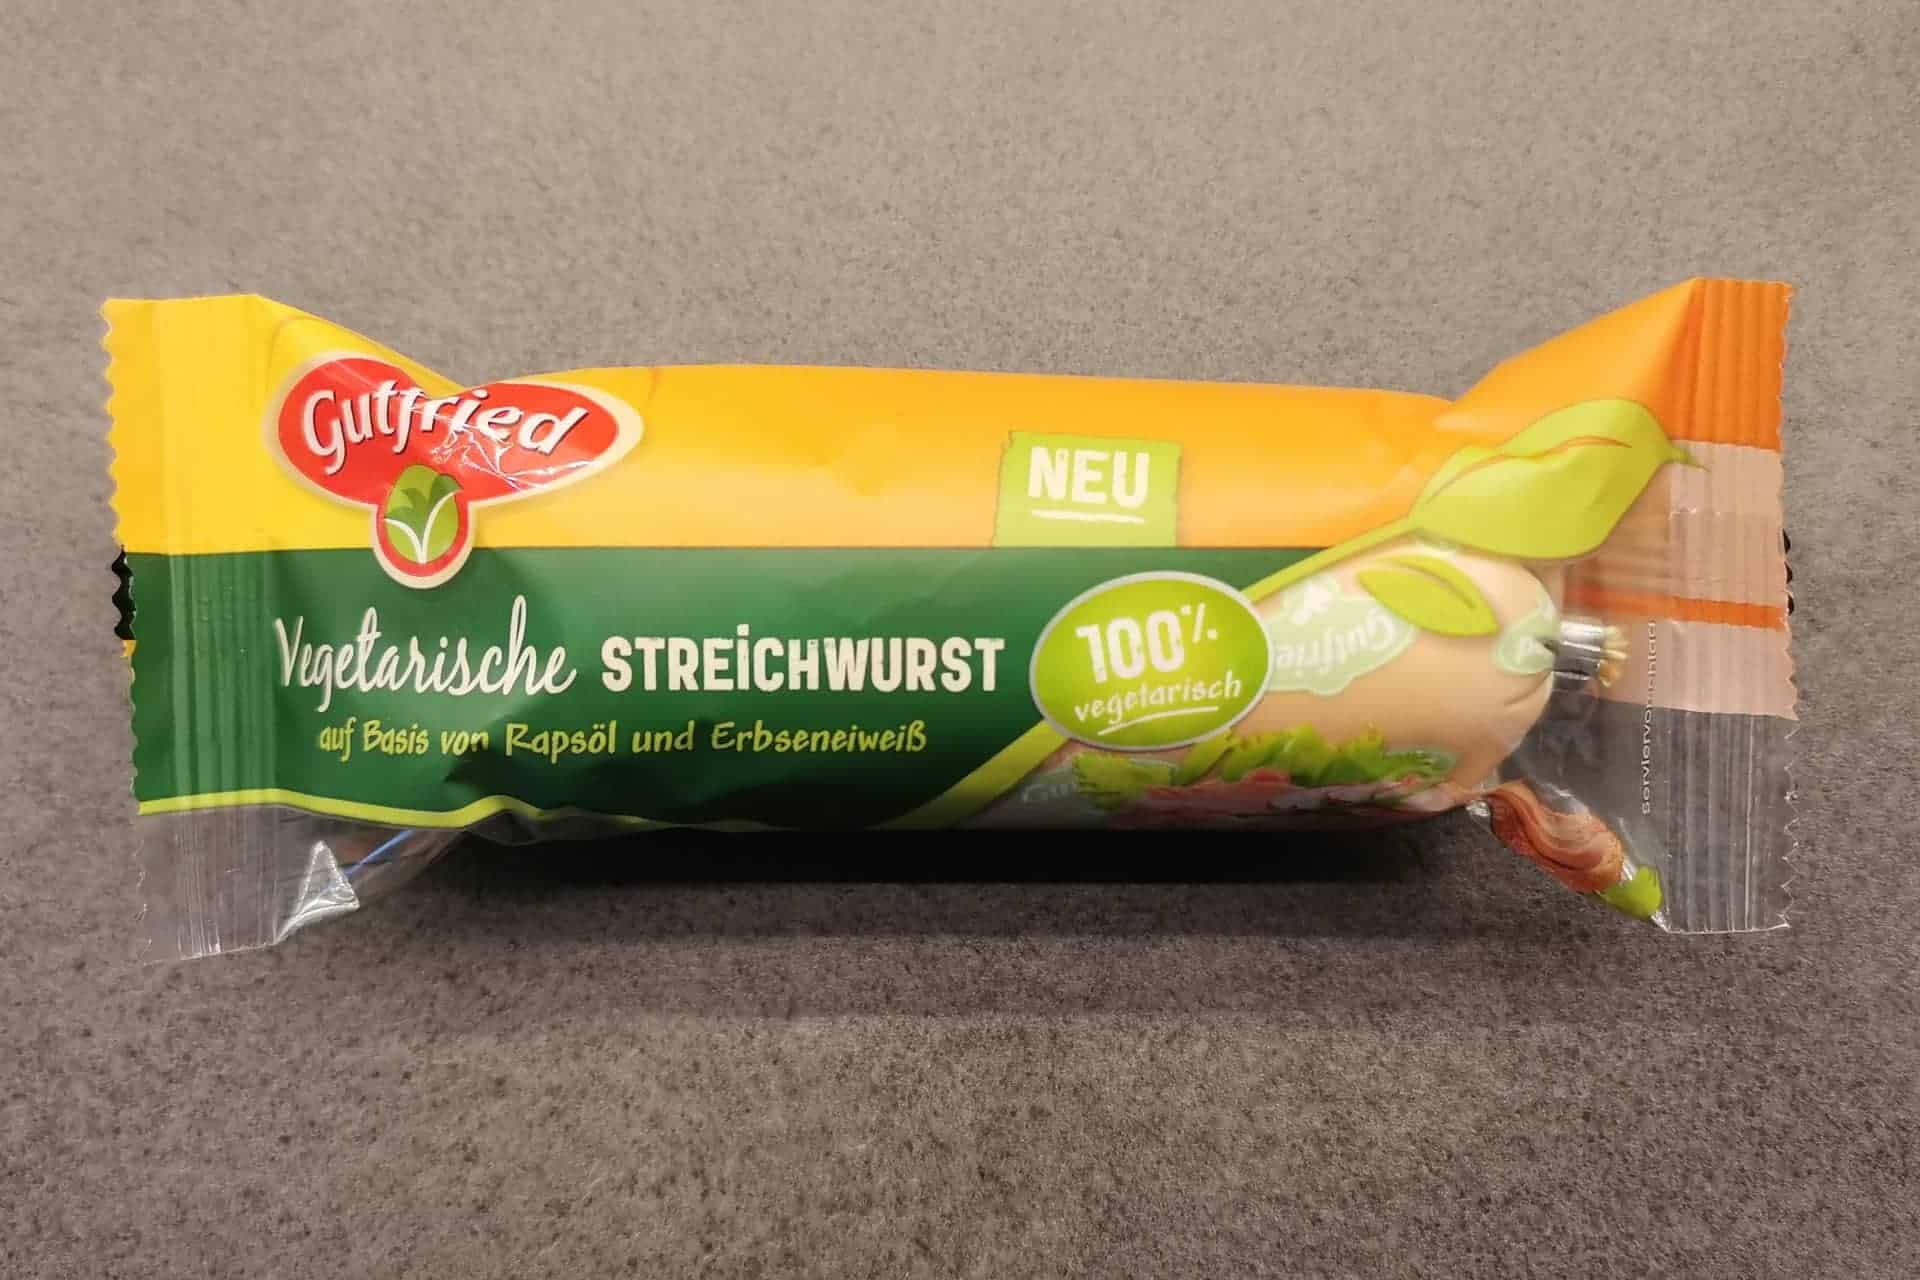 Gutfried - Vegetarische Streichwurst